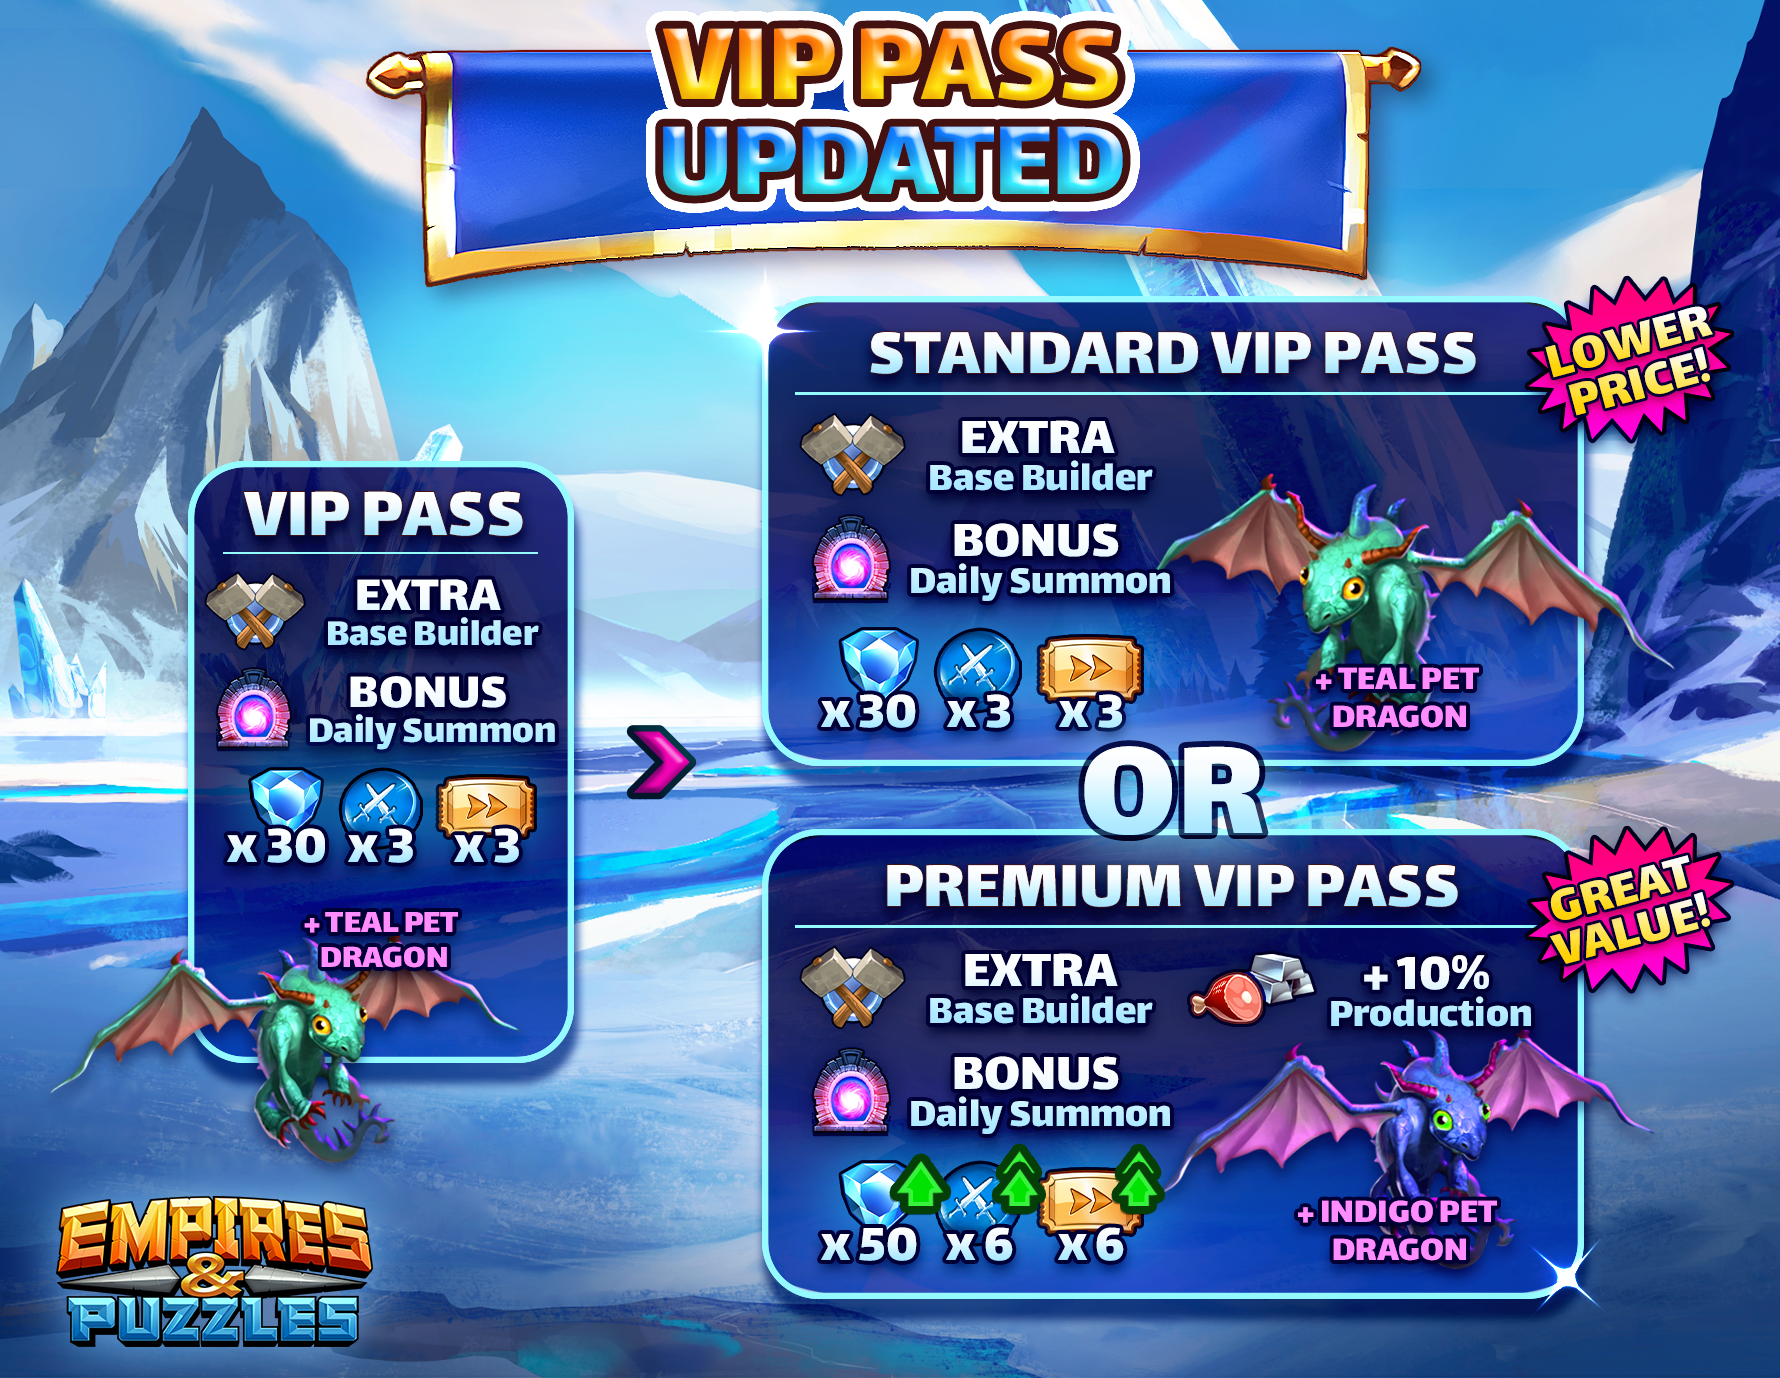 EP VIP Pass Premium Update WIDE-2